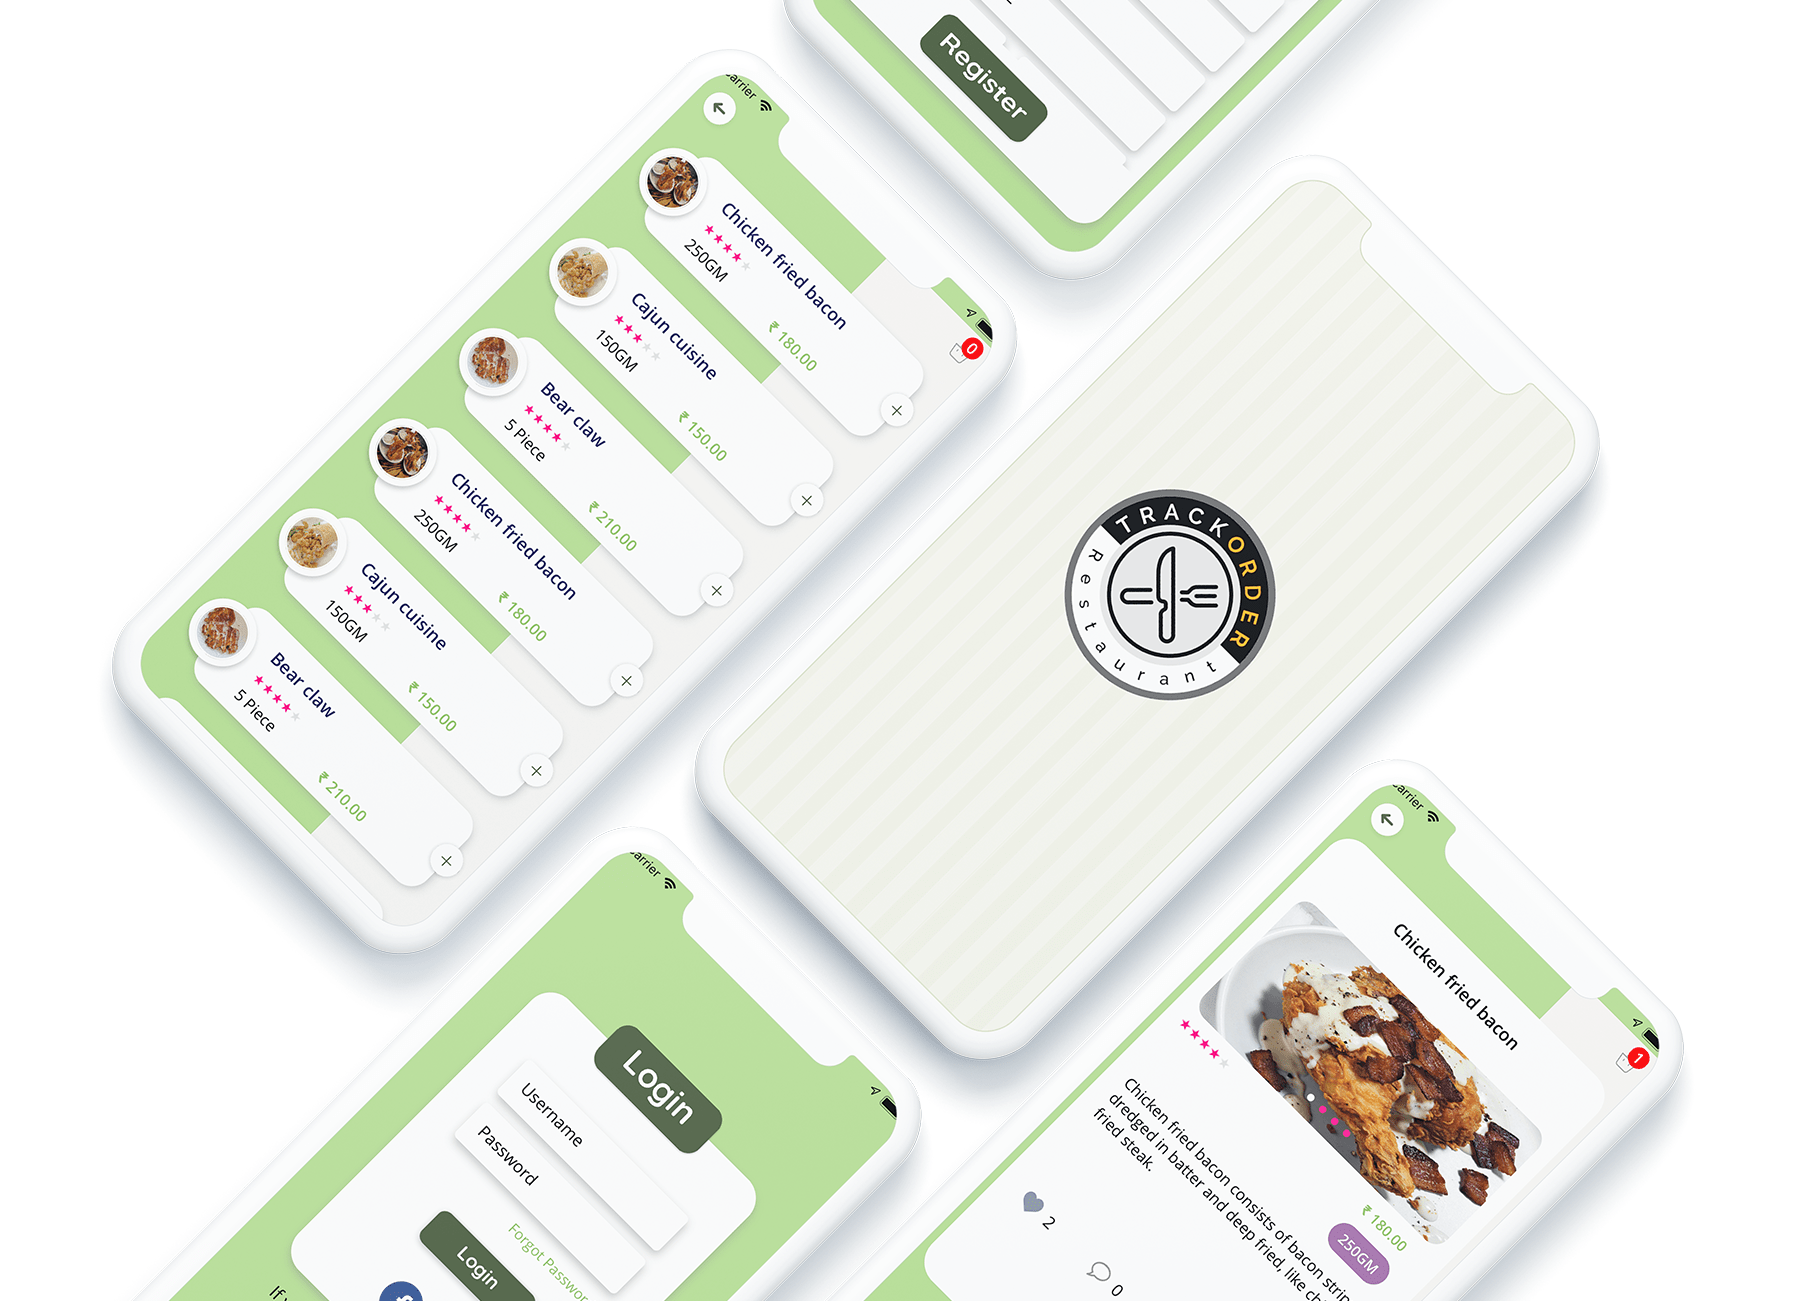 Food Delivery & Restaurant Flutter App Development Service